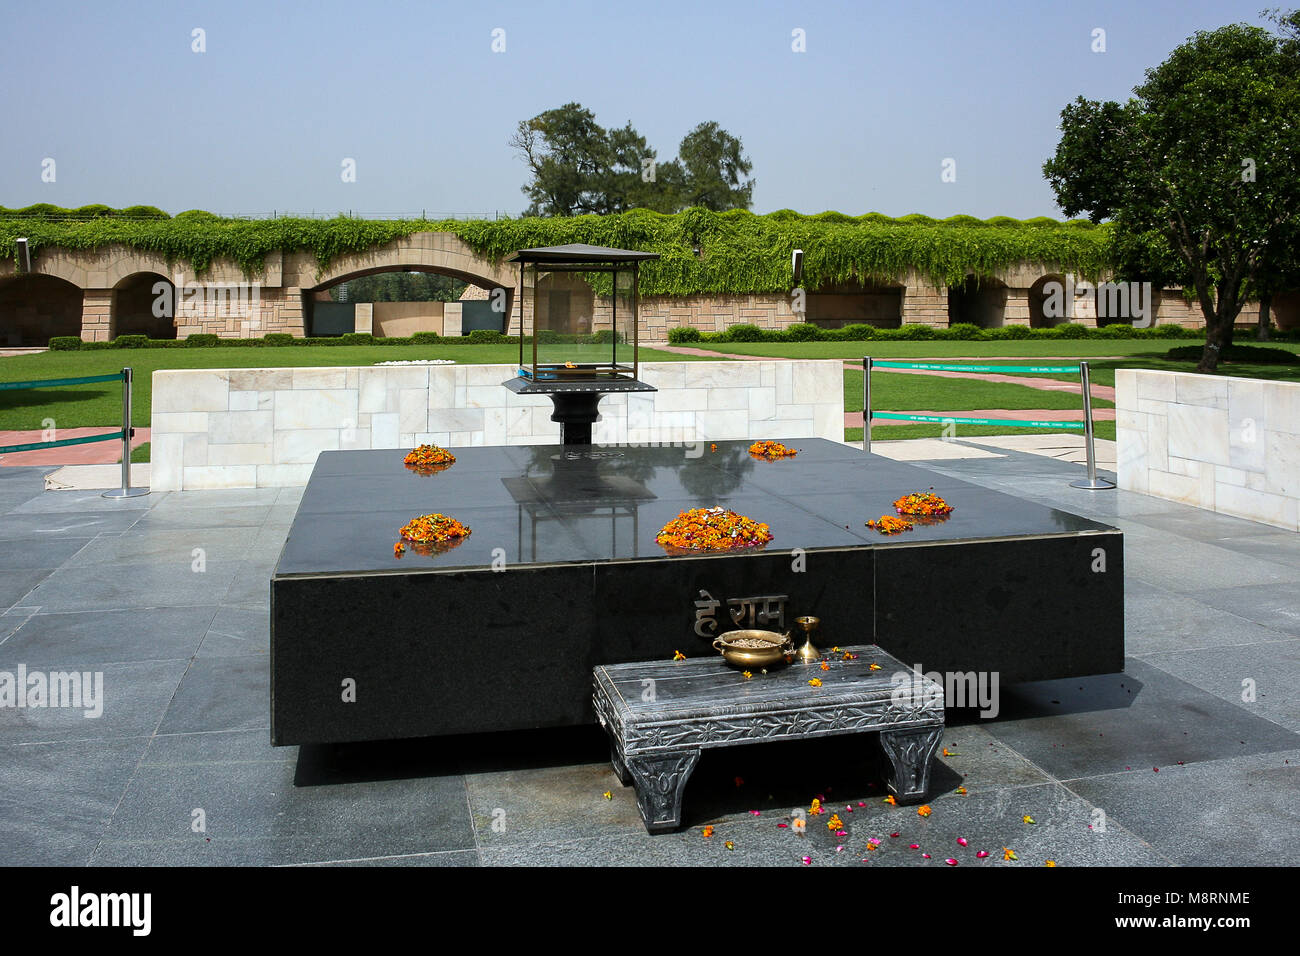 Memorial of Gandhi, New Delhi, India: Raj Ghat,the tomb of Gandhi in New Delhi, India Stock Photo